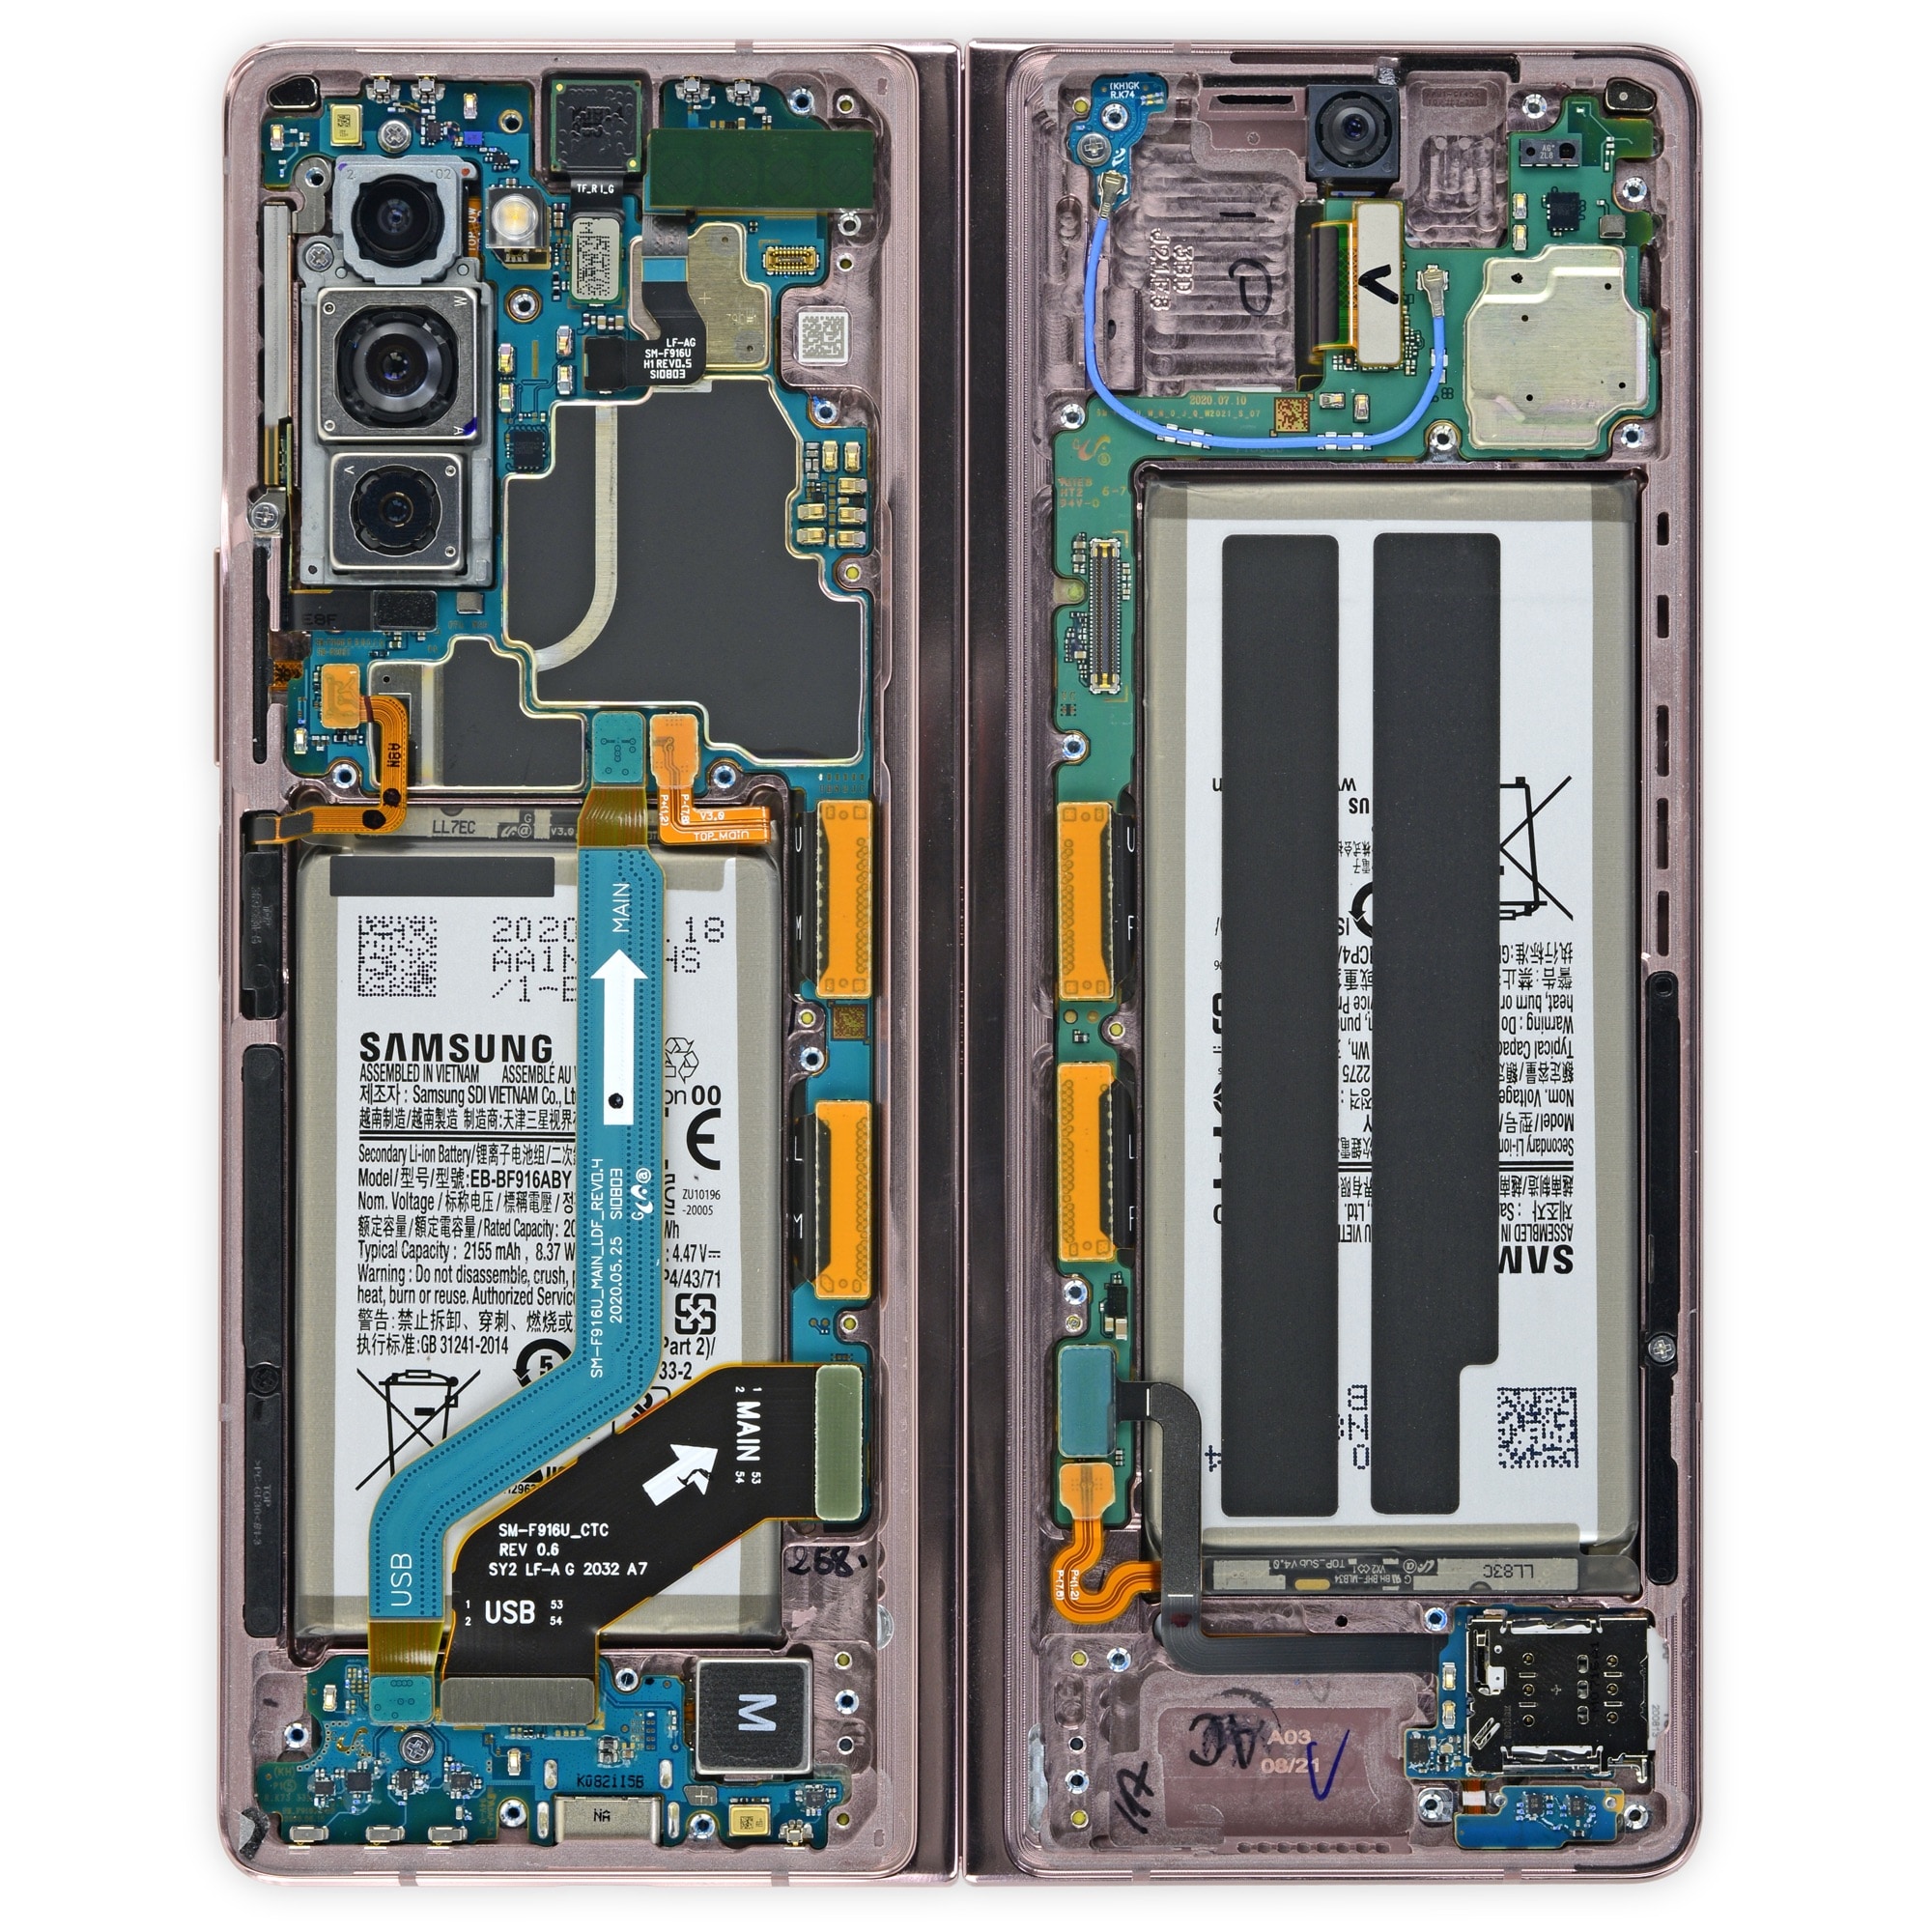 Samsung Galaxy Z Fold 2 messo a nudo da iFixit: migliorata la riparabilità, anche se non di molto (aggiornato)